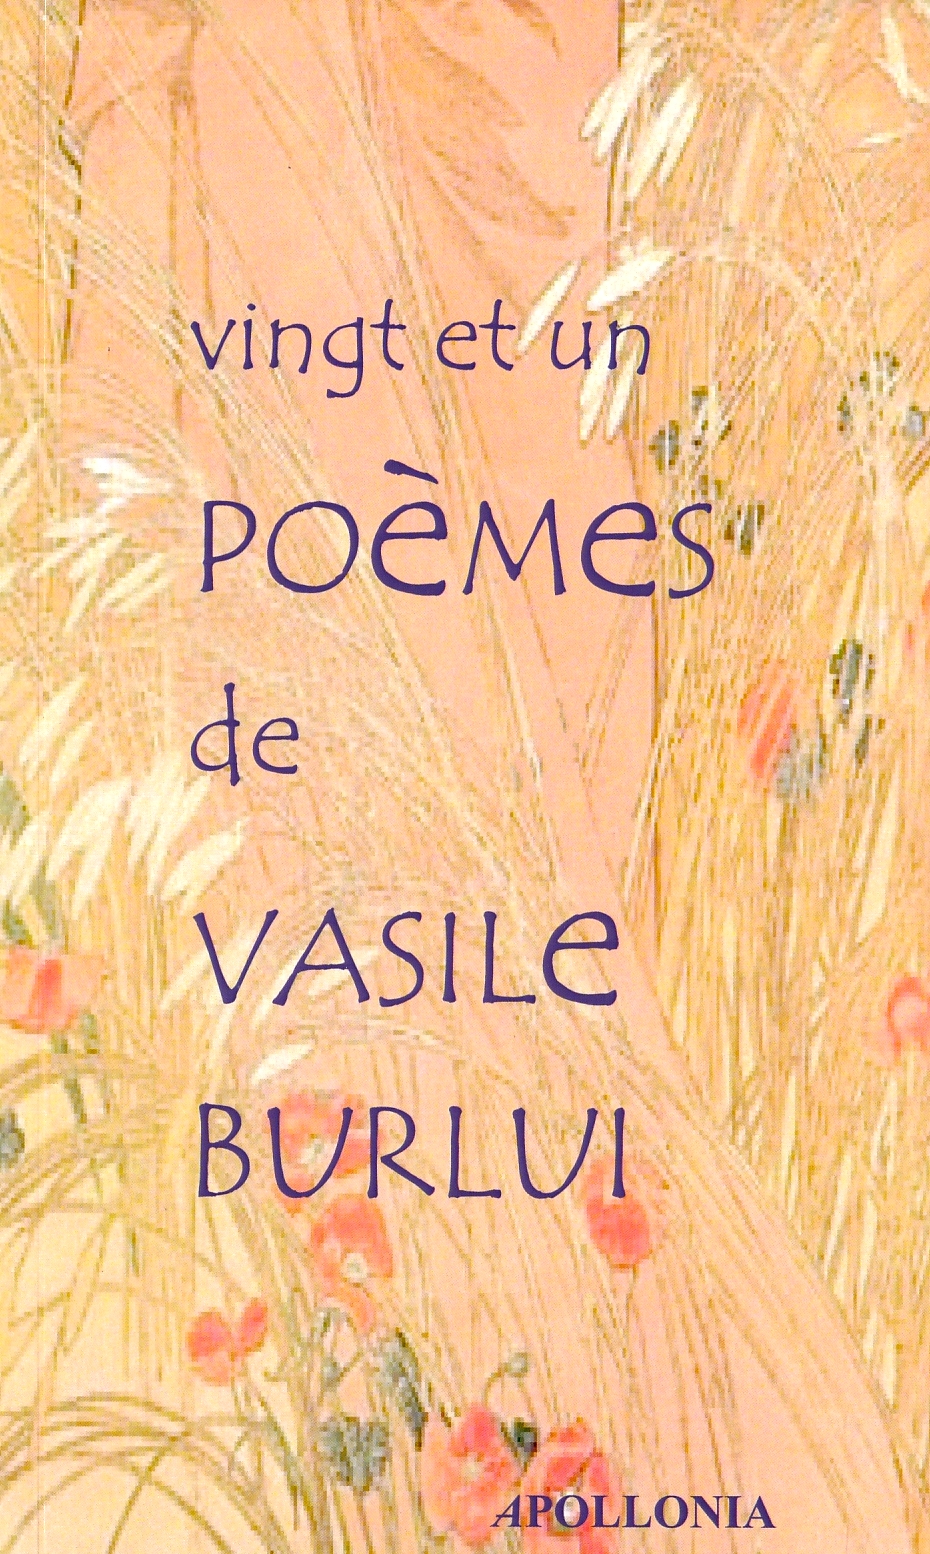 Vingt et un poemes - Vasile Burlui